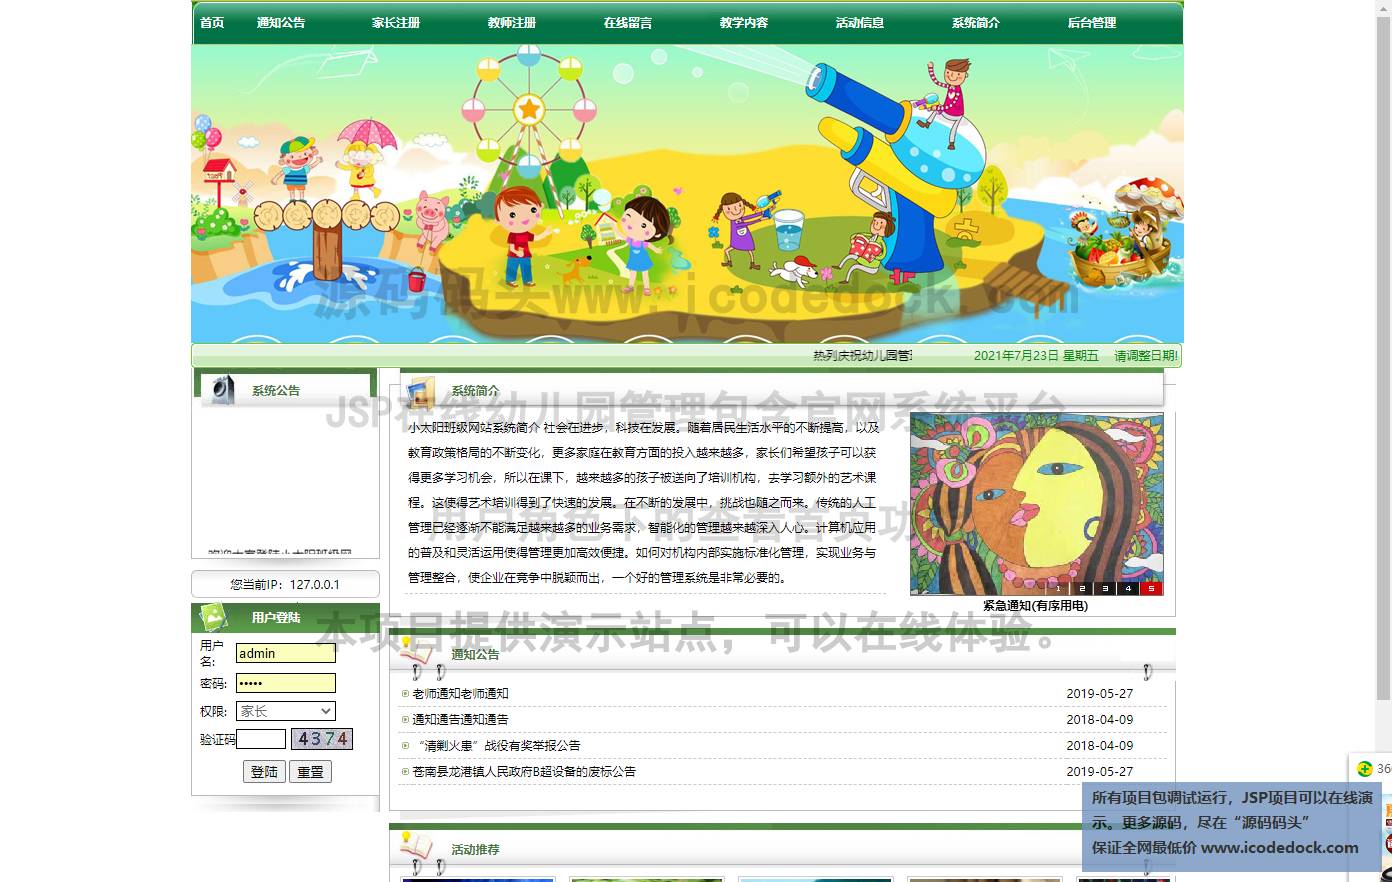 源码码头-JSP在线幼儿园管理包含官网系统平台-用户角色-查看首页